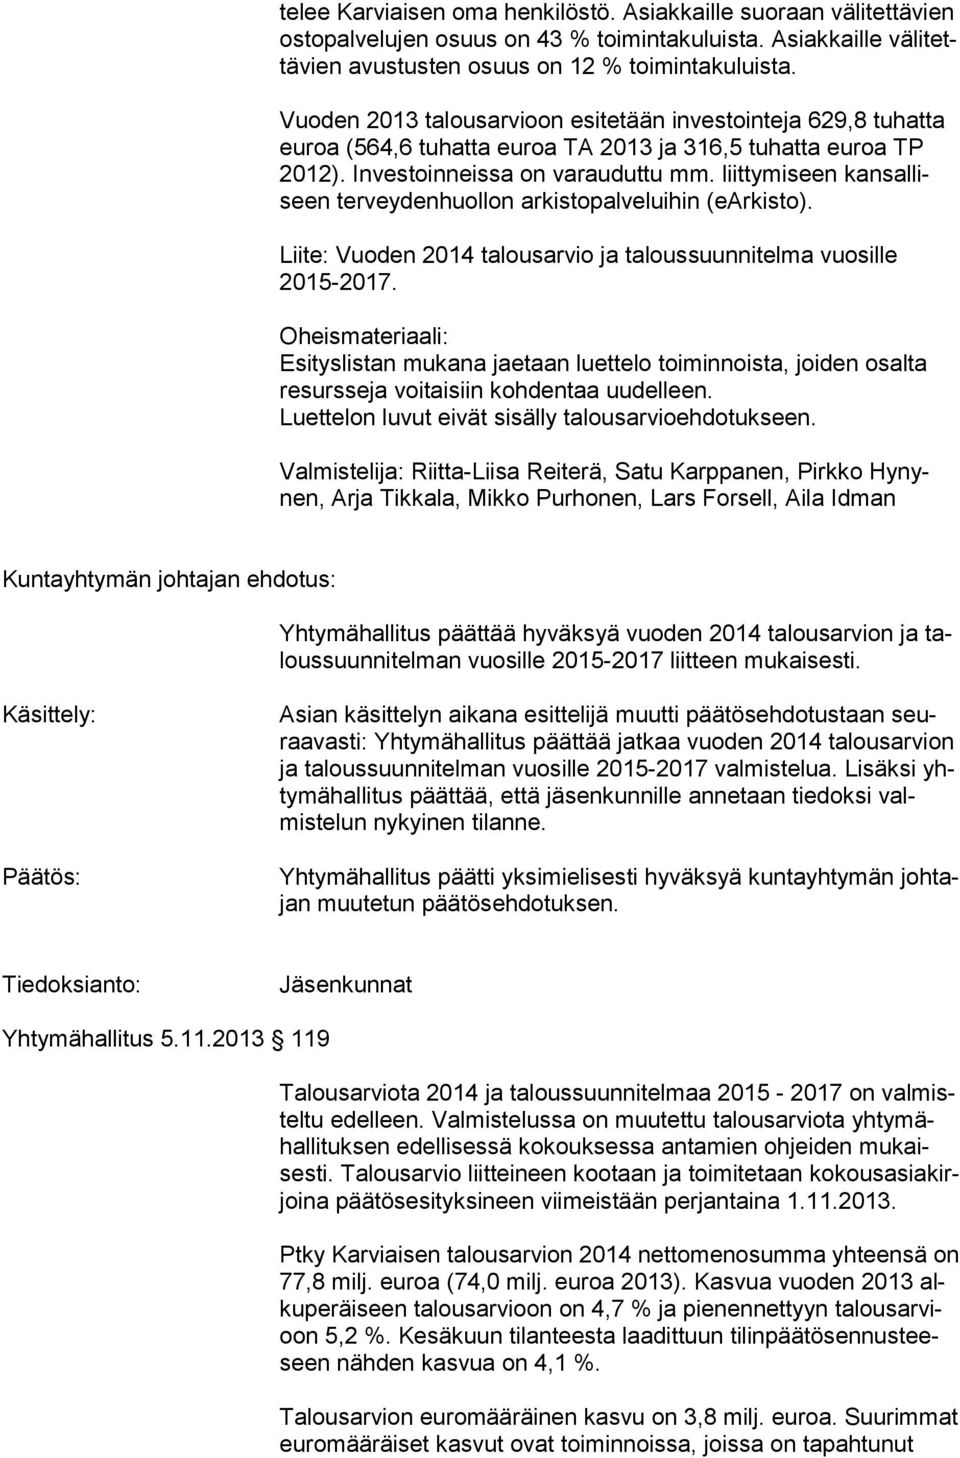 liittymiseen kansalliseen terveydenhuollon arkisto palveluihin (earkisto). Liite: Vuoden 2014 talousarvio ja taloussuunnitelma vuosille 2015-2017.